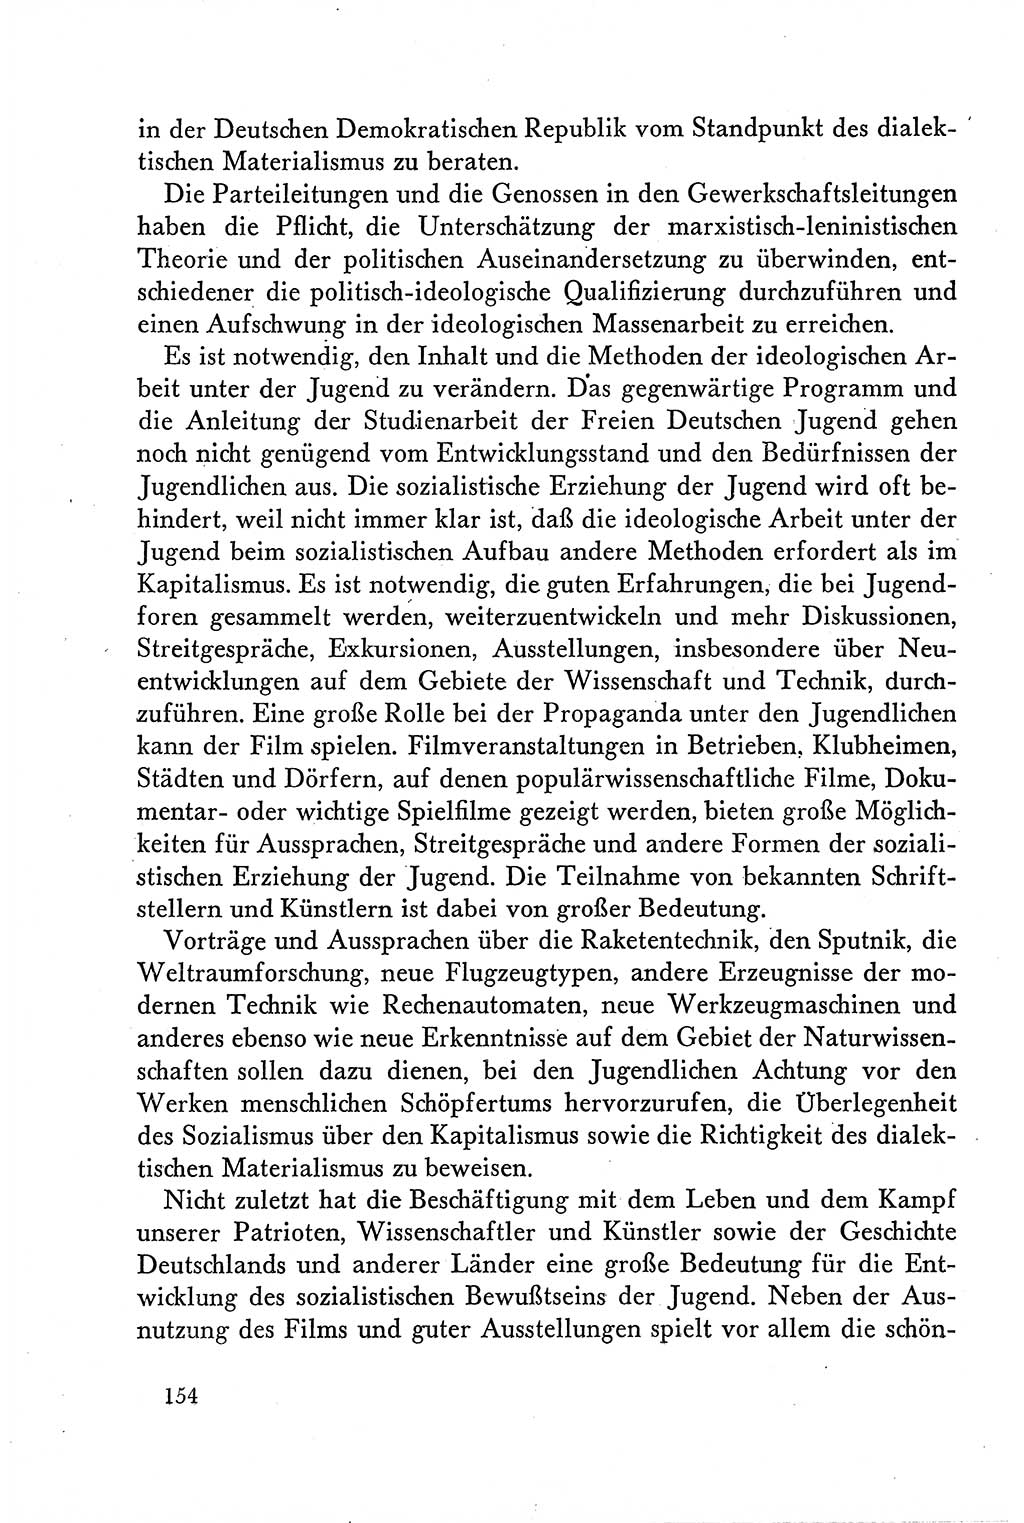 Dokumente der Sozialistischen Einheitspartei Deutschlands (SED) [Deutsche Demokratische Republik (DDR)] 1958-1959, Seite 154 (Dok. SED DDR 1958-1959, S. 154)